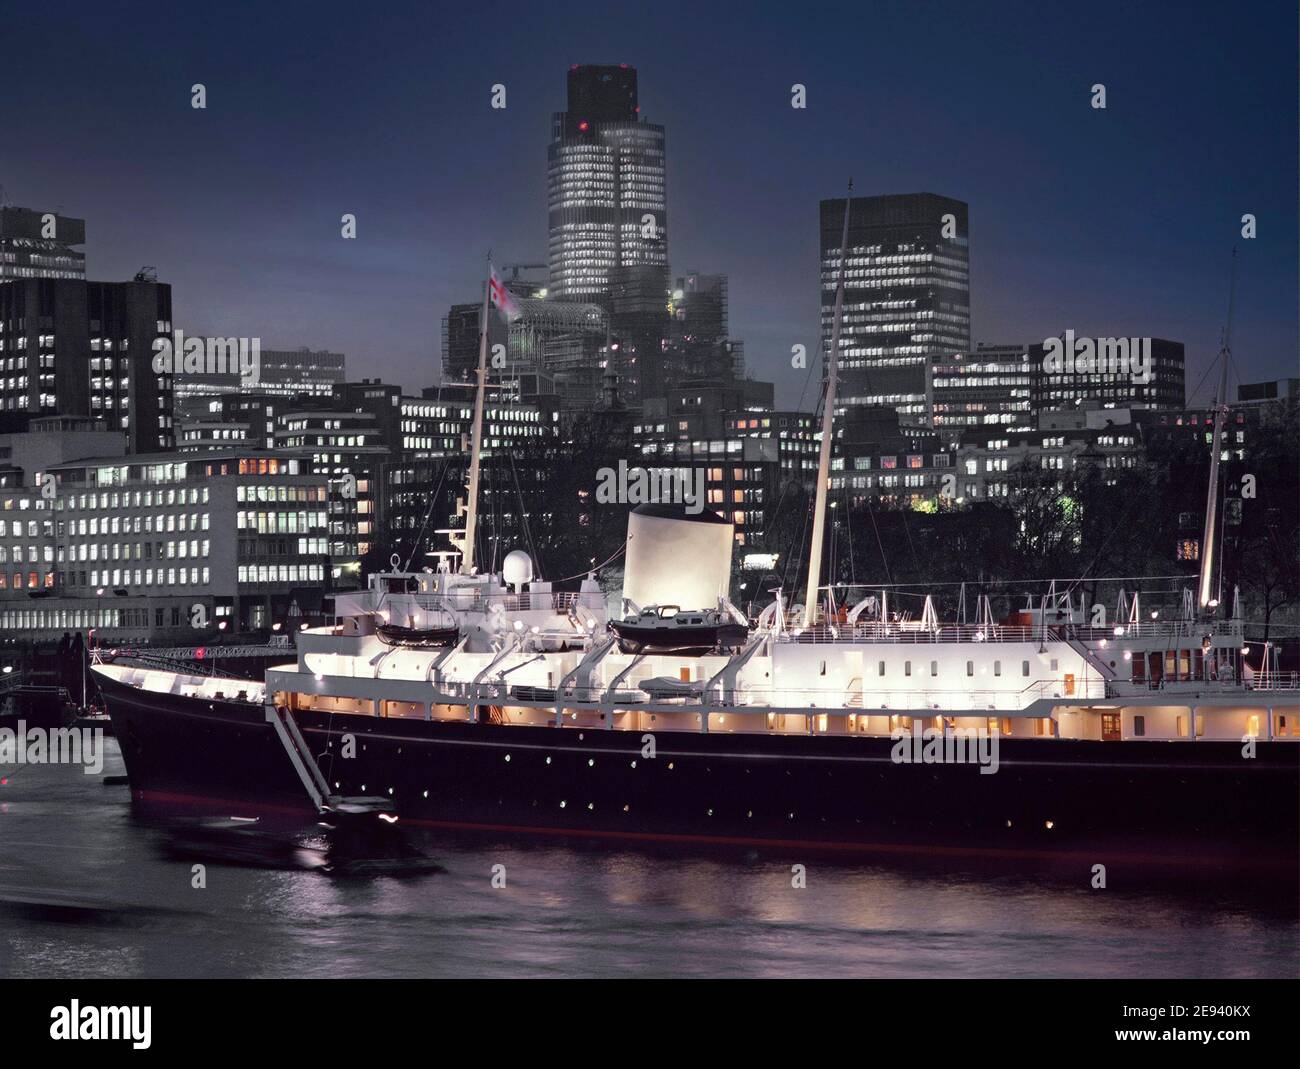 Historische Archivbilder auf der Hafenseite der Royal Yacht Britannia, die in der Abenddämmerung in der Themse am Pool von London im Jahr 1980s angedockt und mit Flutlicht beleuchtet wurde, mit der Skyline der City of London Nat West Tower Wahrzeichen Wolkenkratzer in der Art, wie wir England im Jahr 80s waren Stockfoto